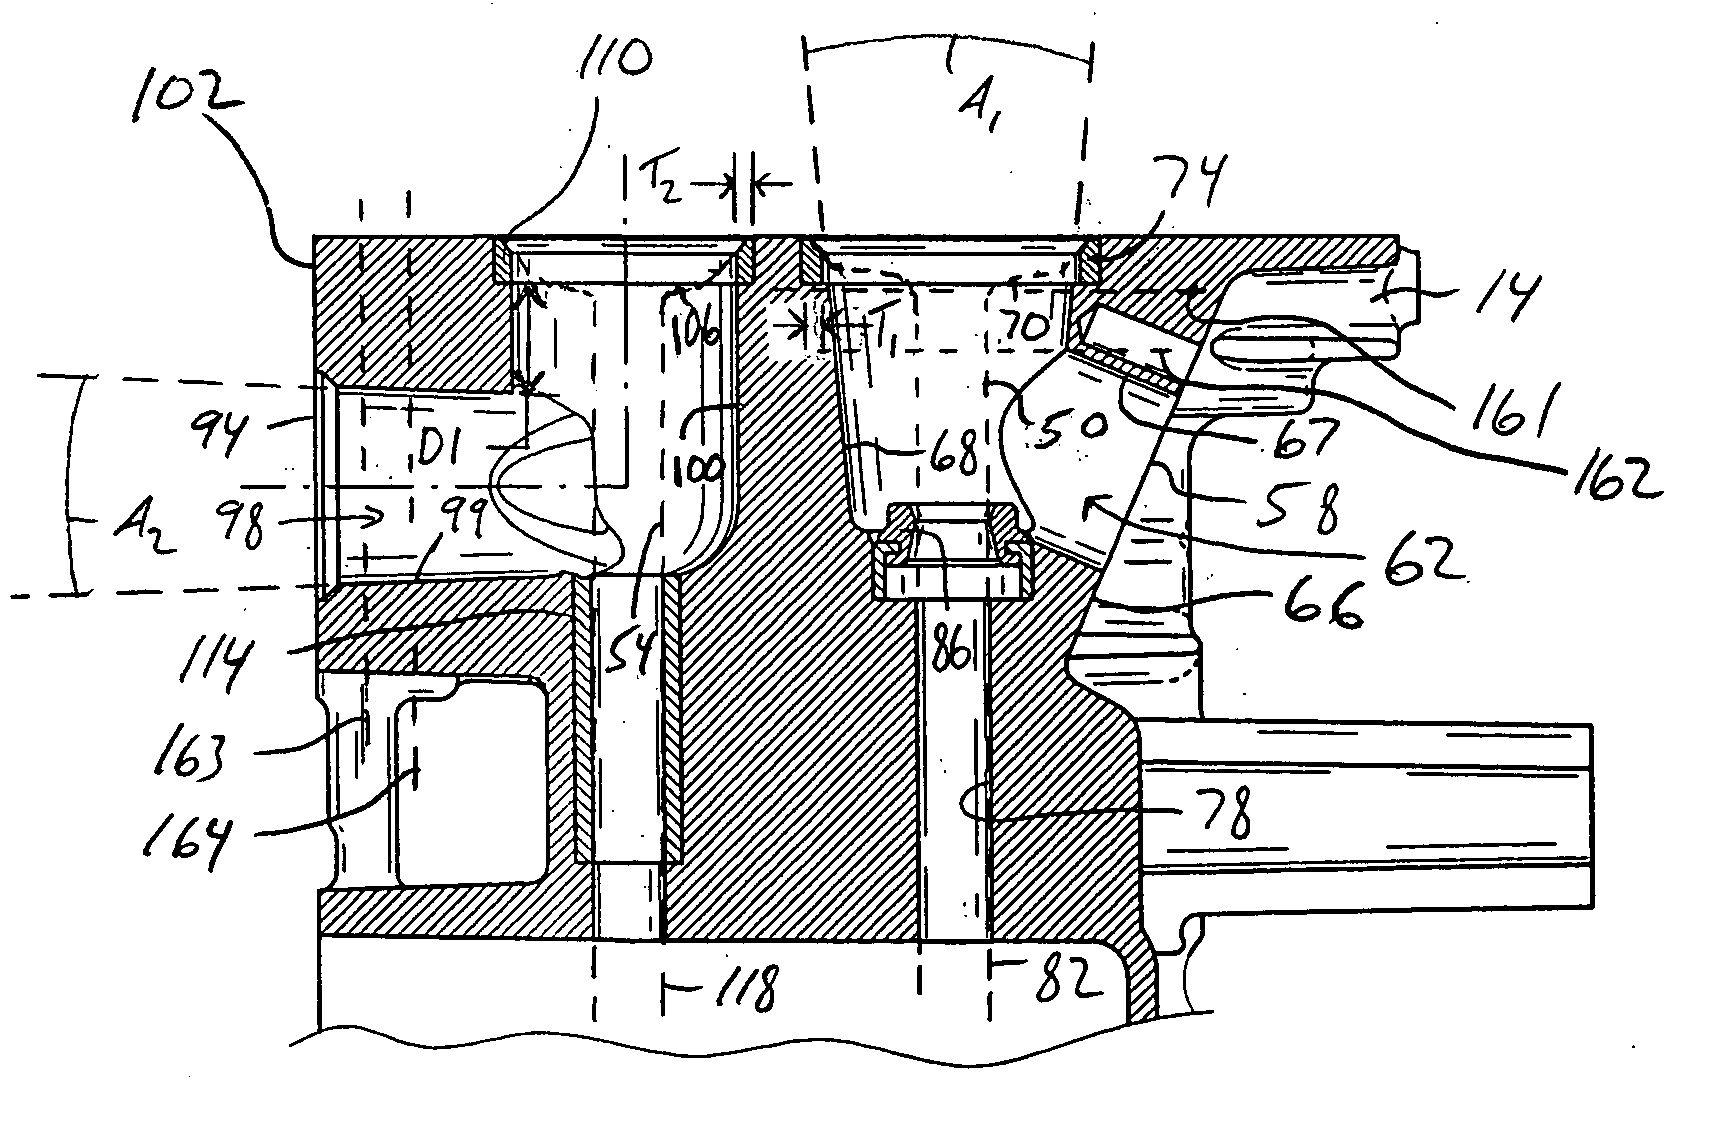 Air flow arrangement for a reduced-emission single cylinder engine